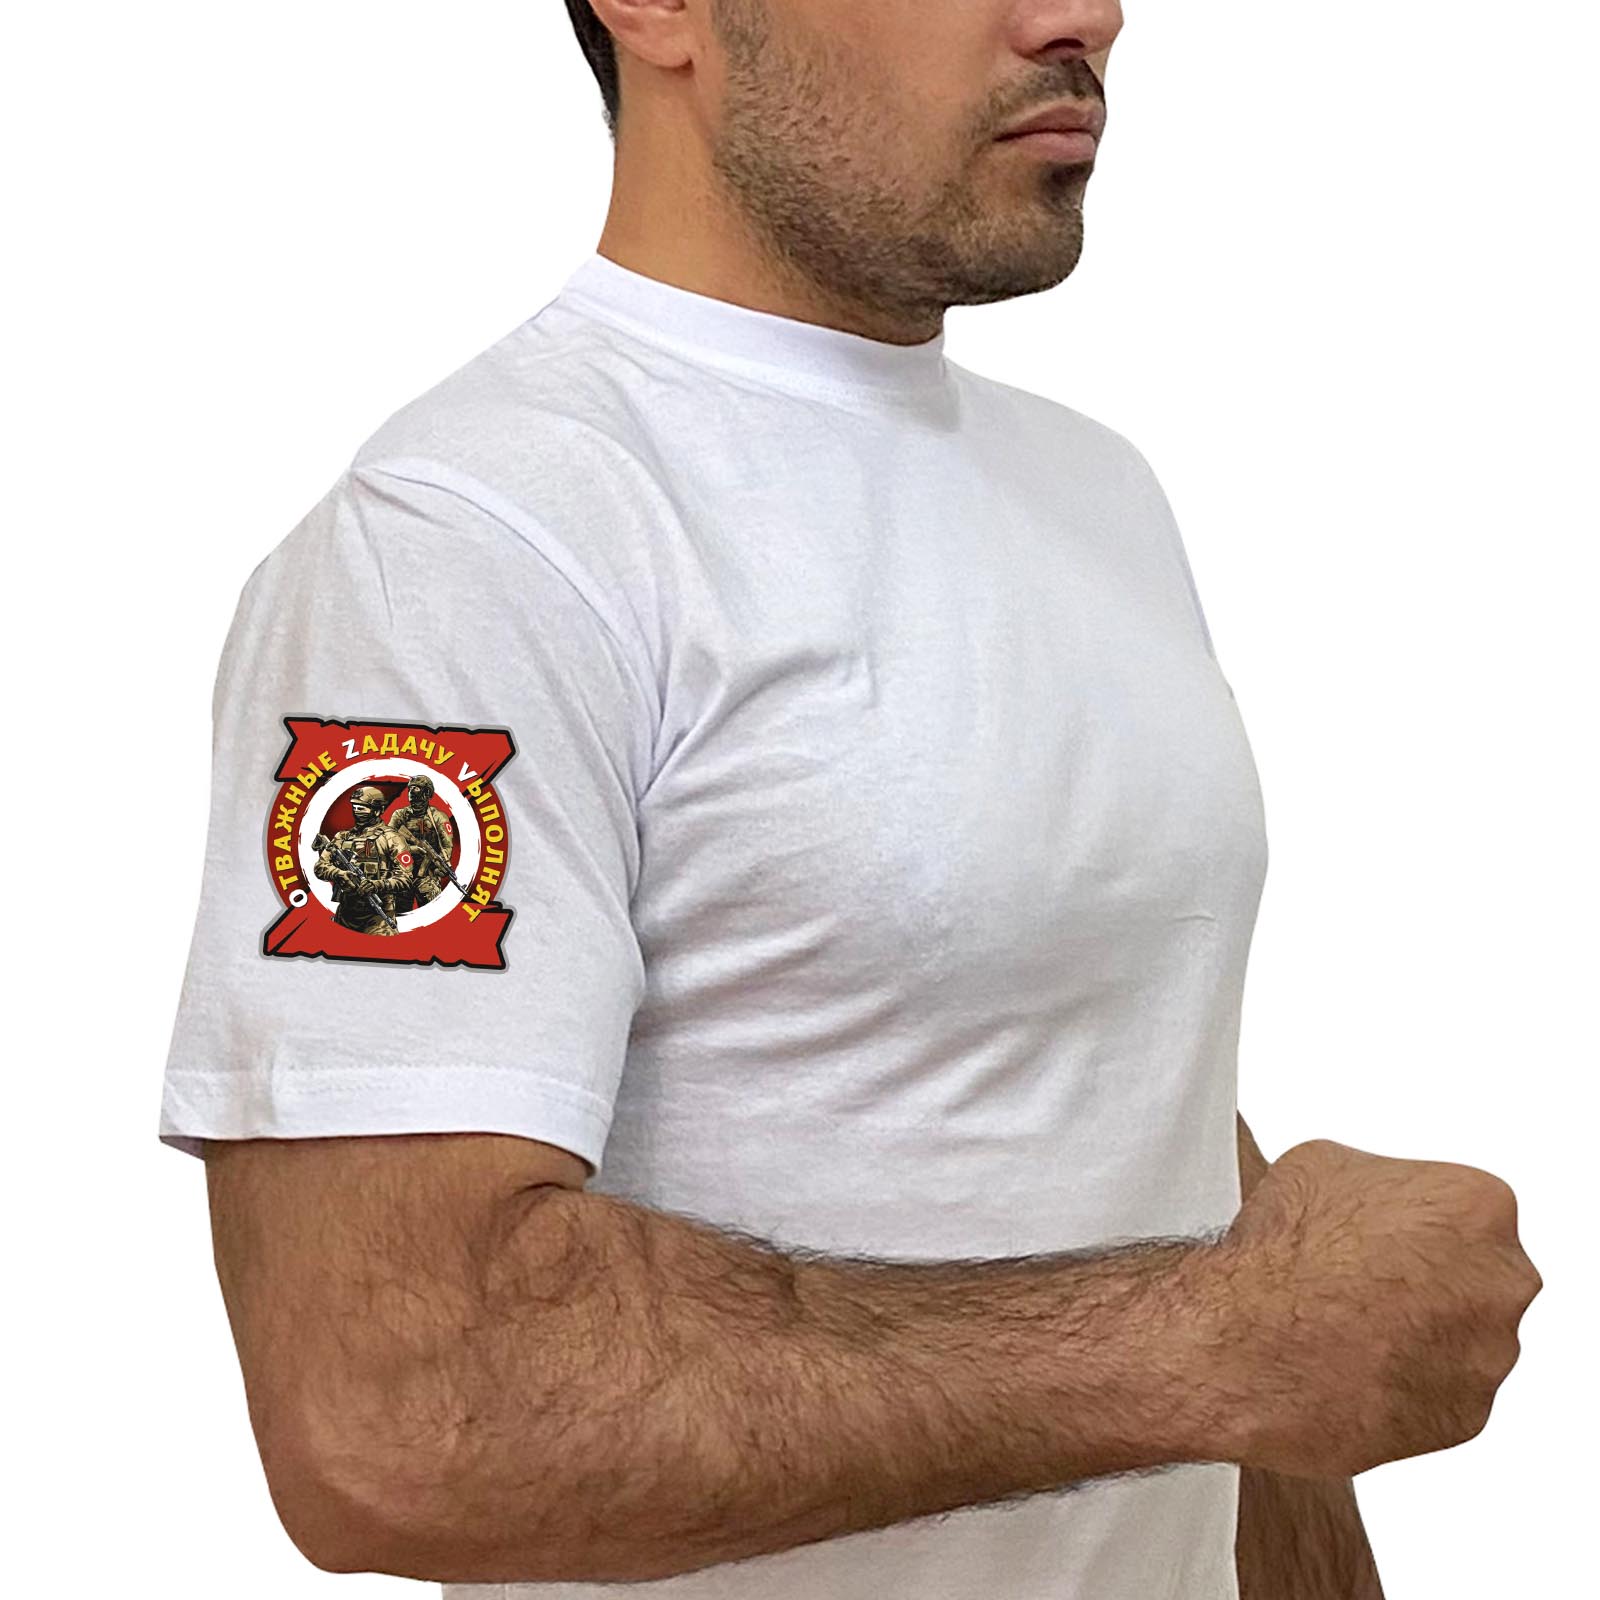 Белая футболка с термопринтом "ОтважныеОтважные Zадачу Vыполнят" на рукаве